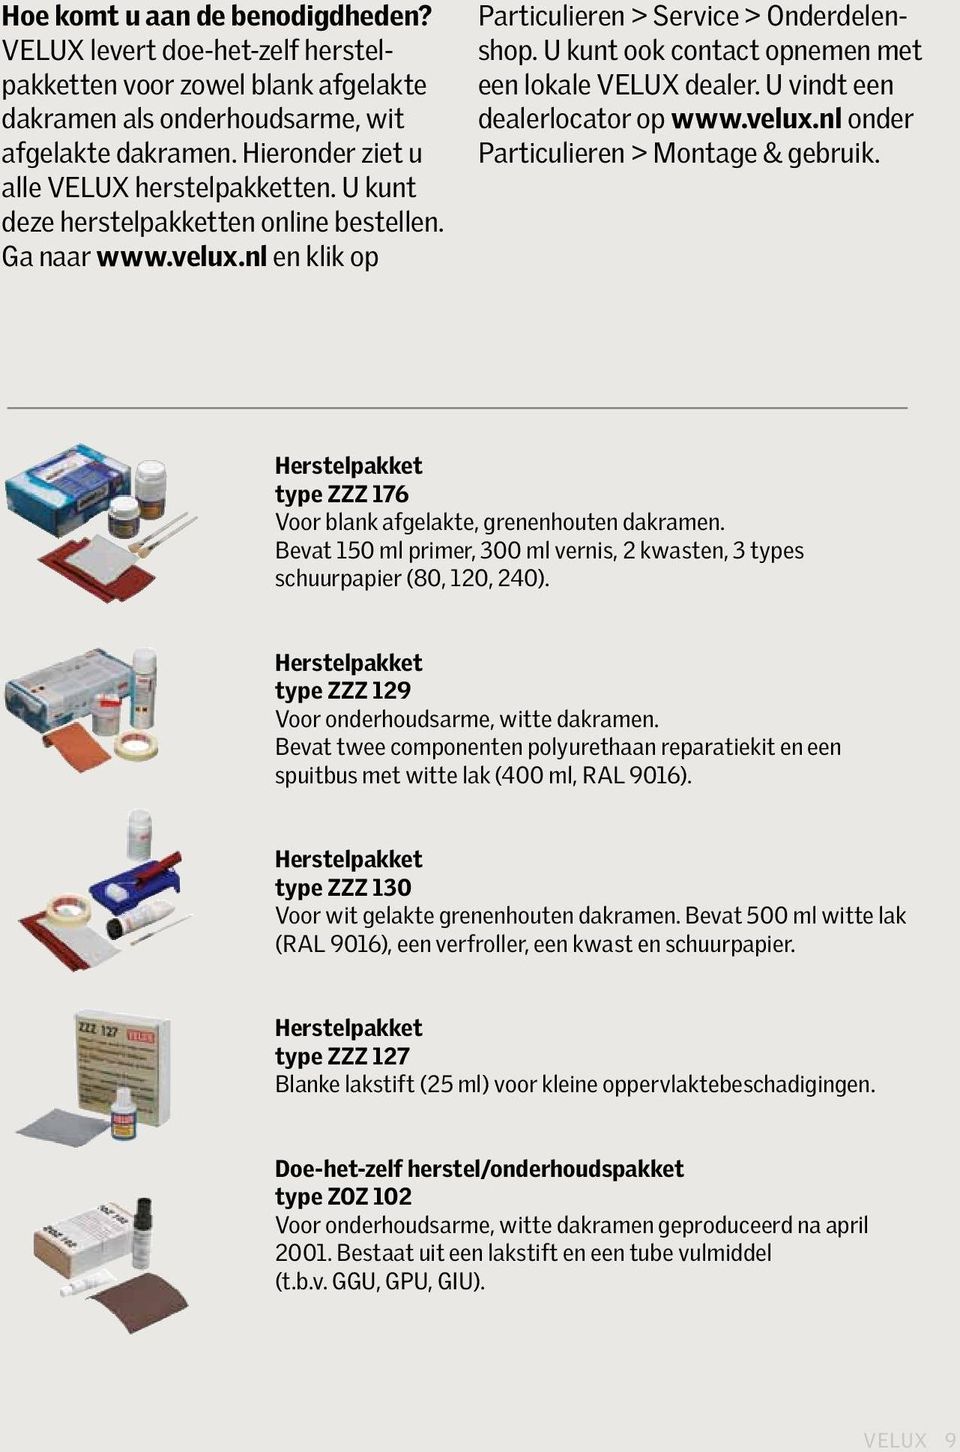 U kunt ook contact opnemen met een lokale VELUX dealer. U vindt een dealerlocator op www.velux.nl onder Particulieren > Montage & gebruik.